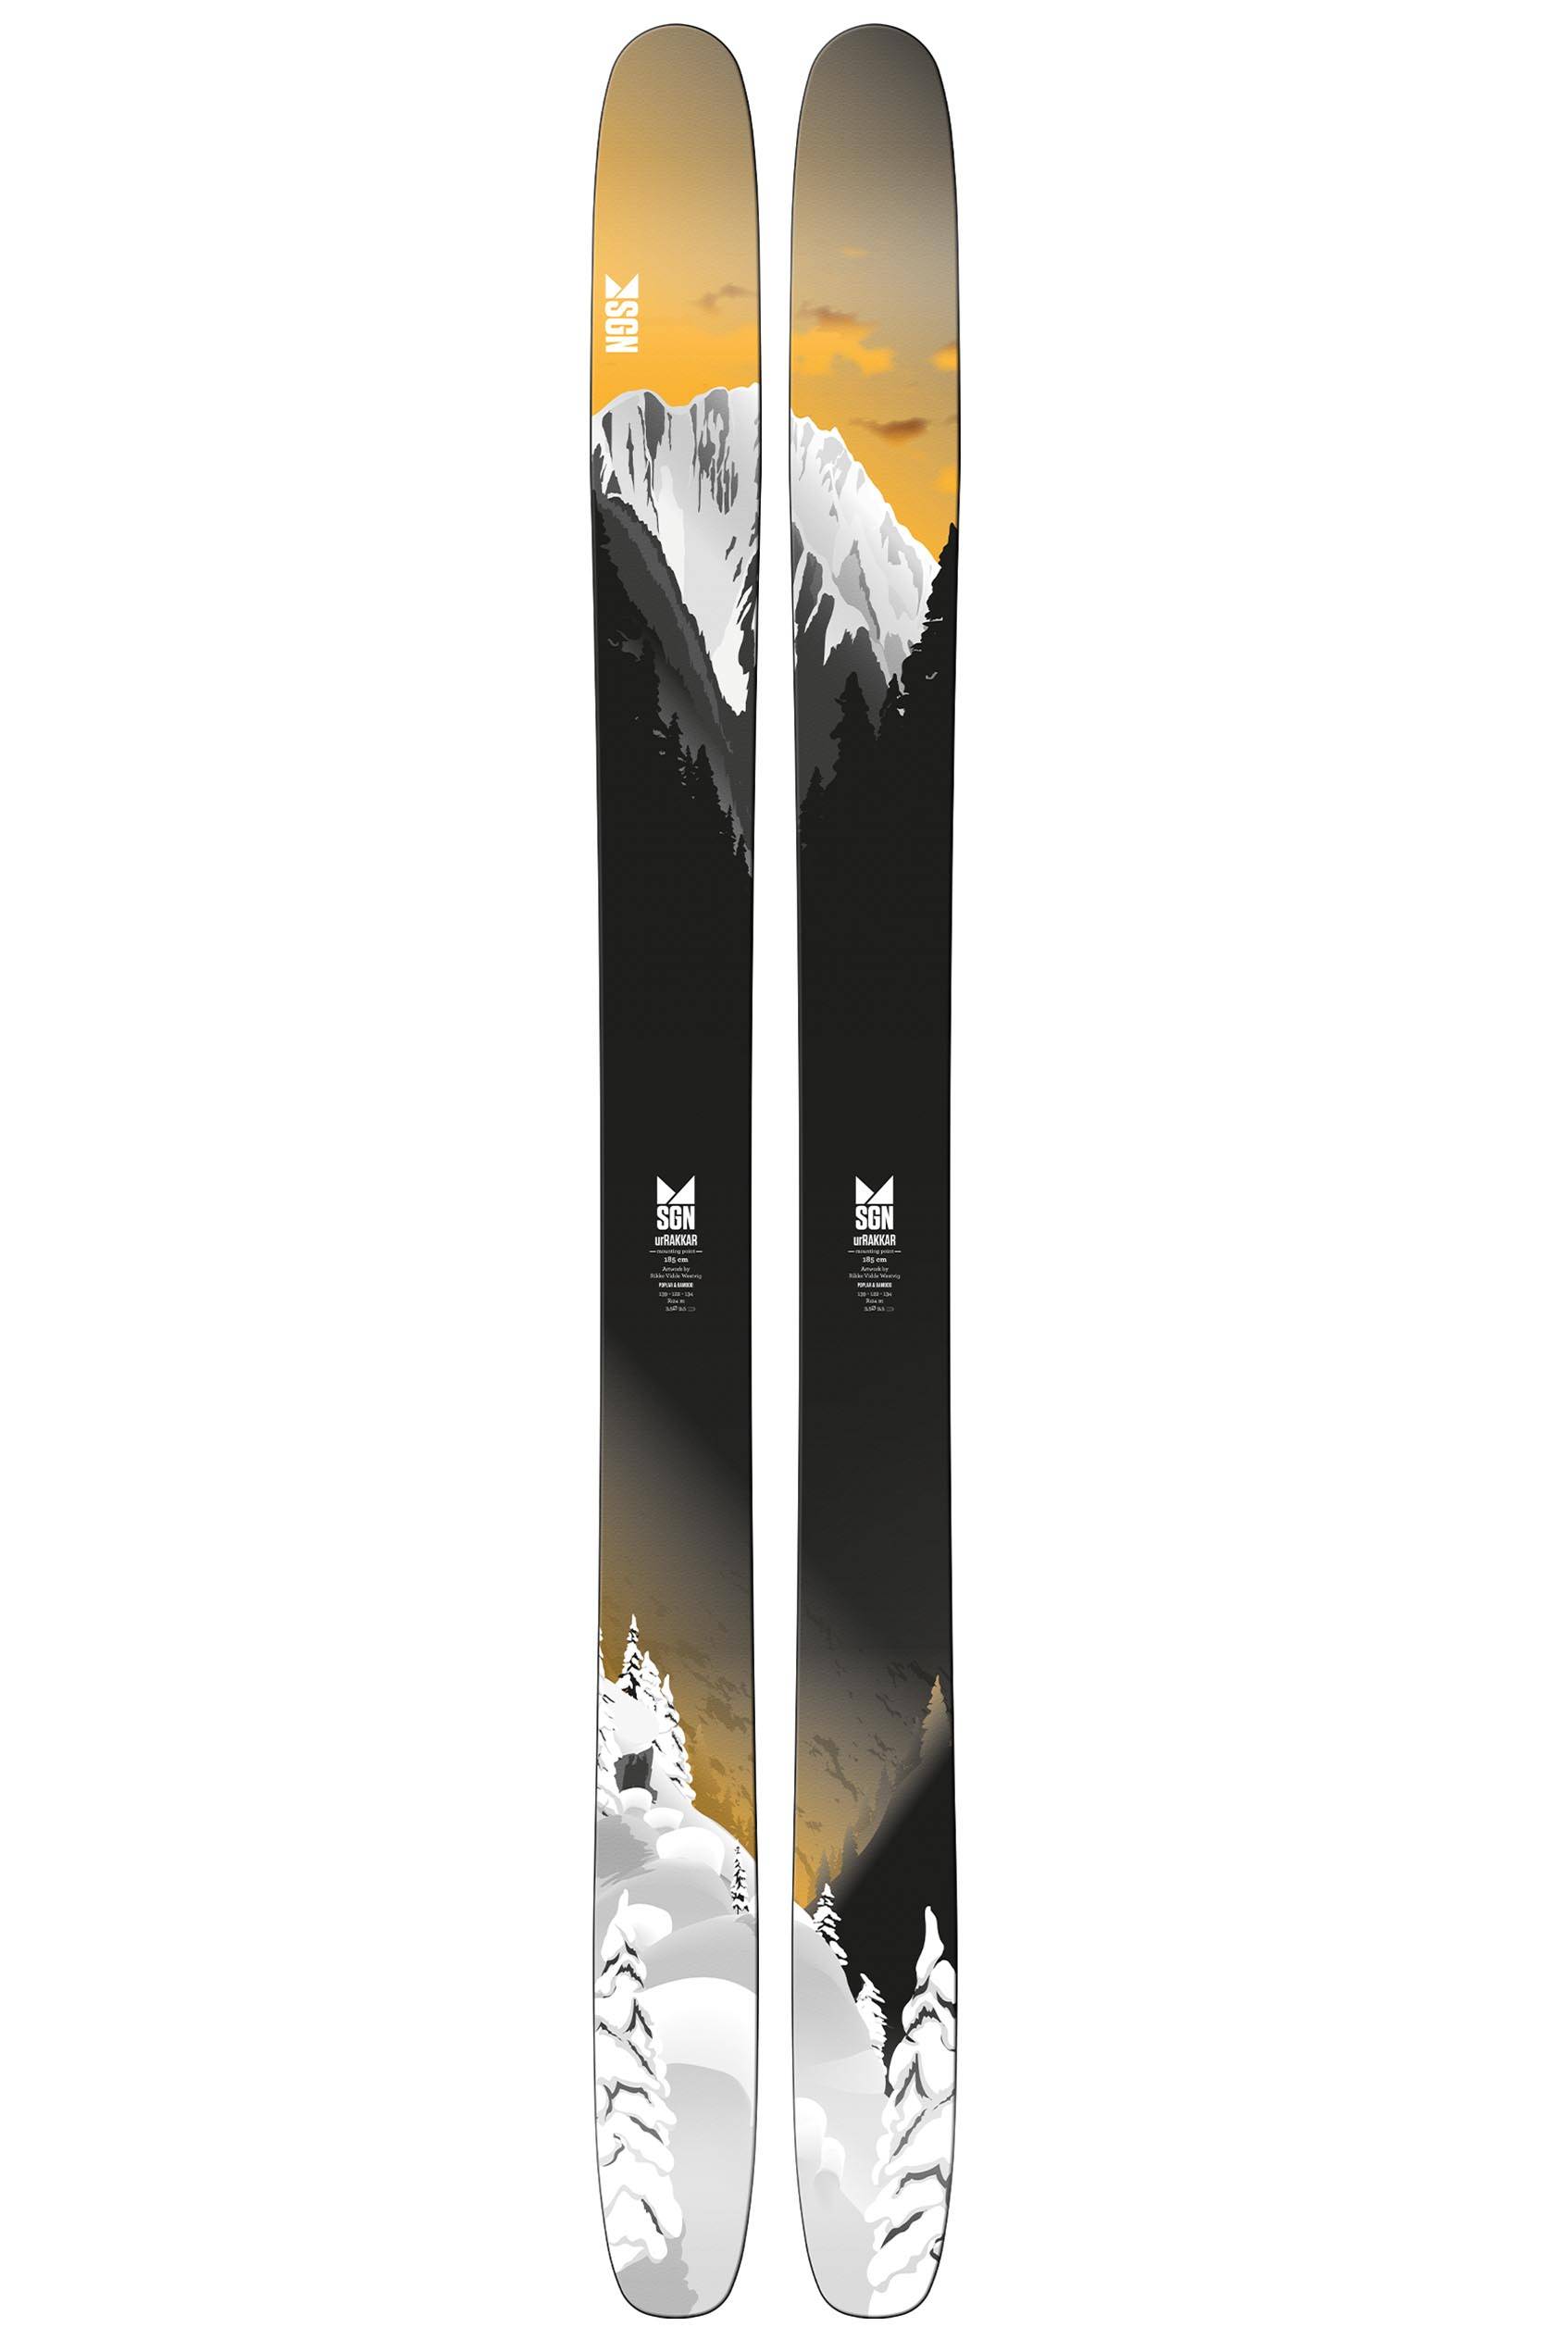 SGN skis urRakkar pudderski 21/22  191 cm 2021